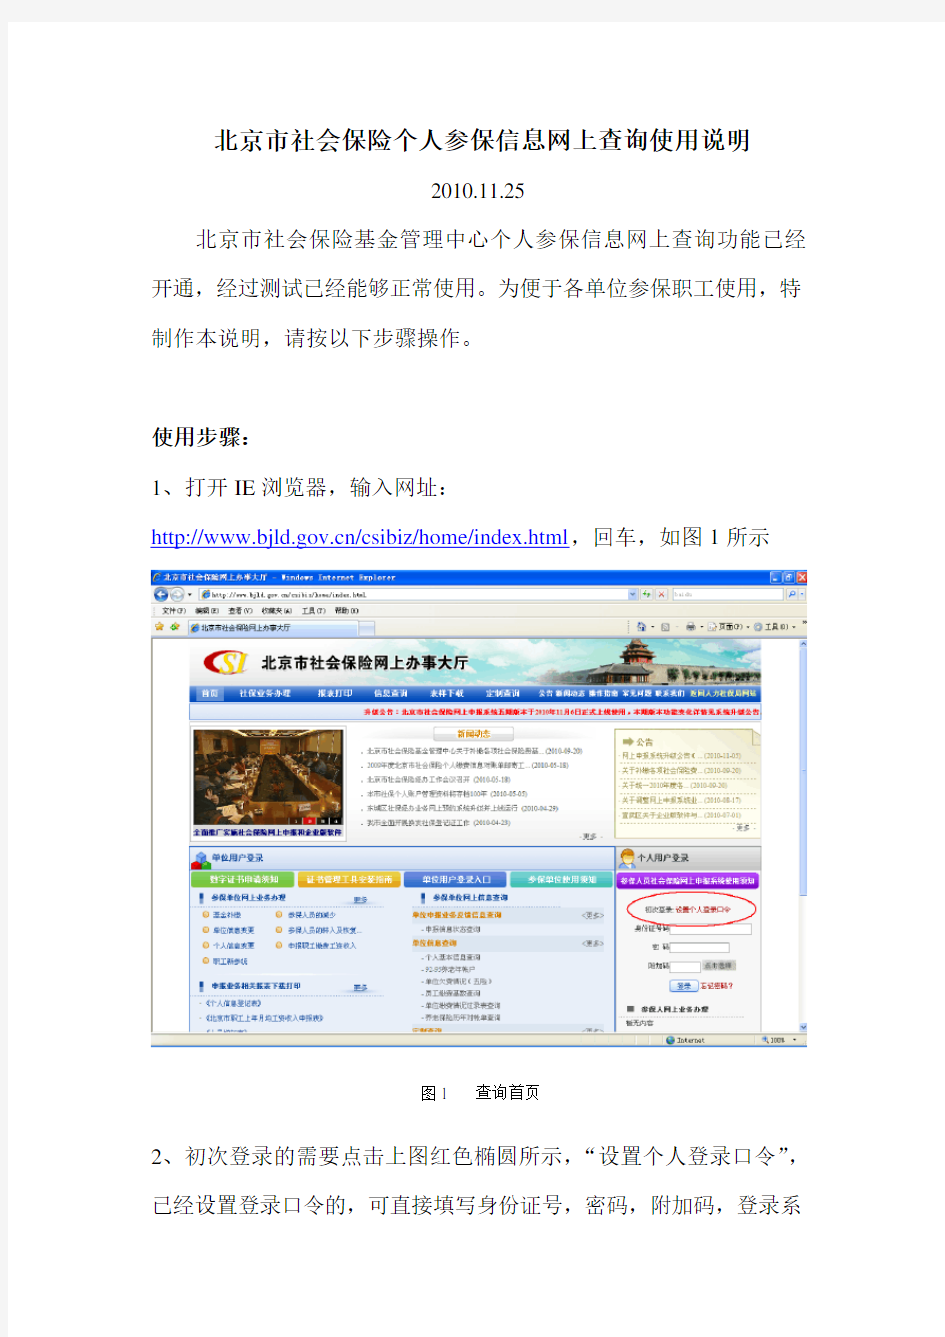 北京市社会保险个人参保信息网上查询使用说明